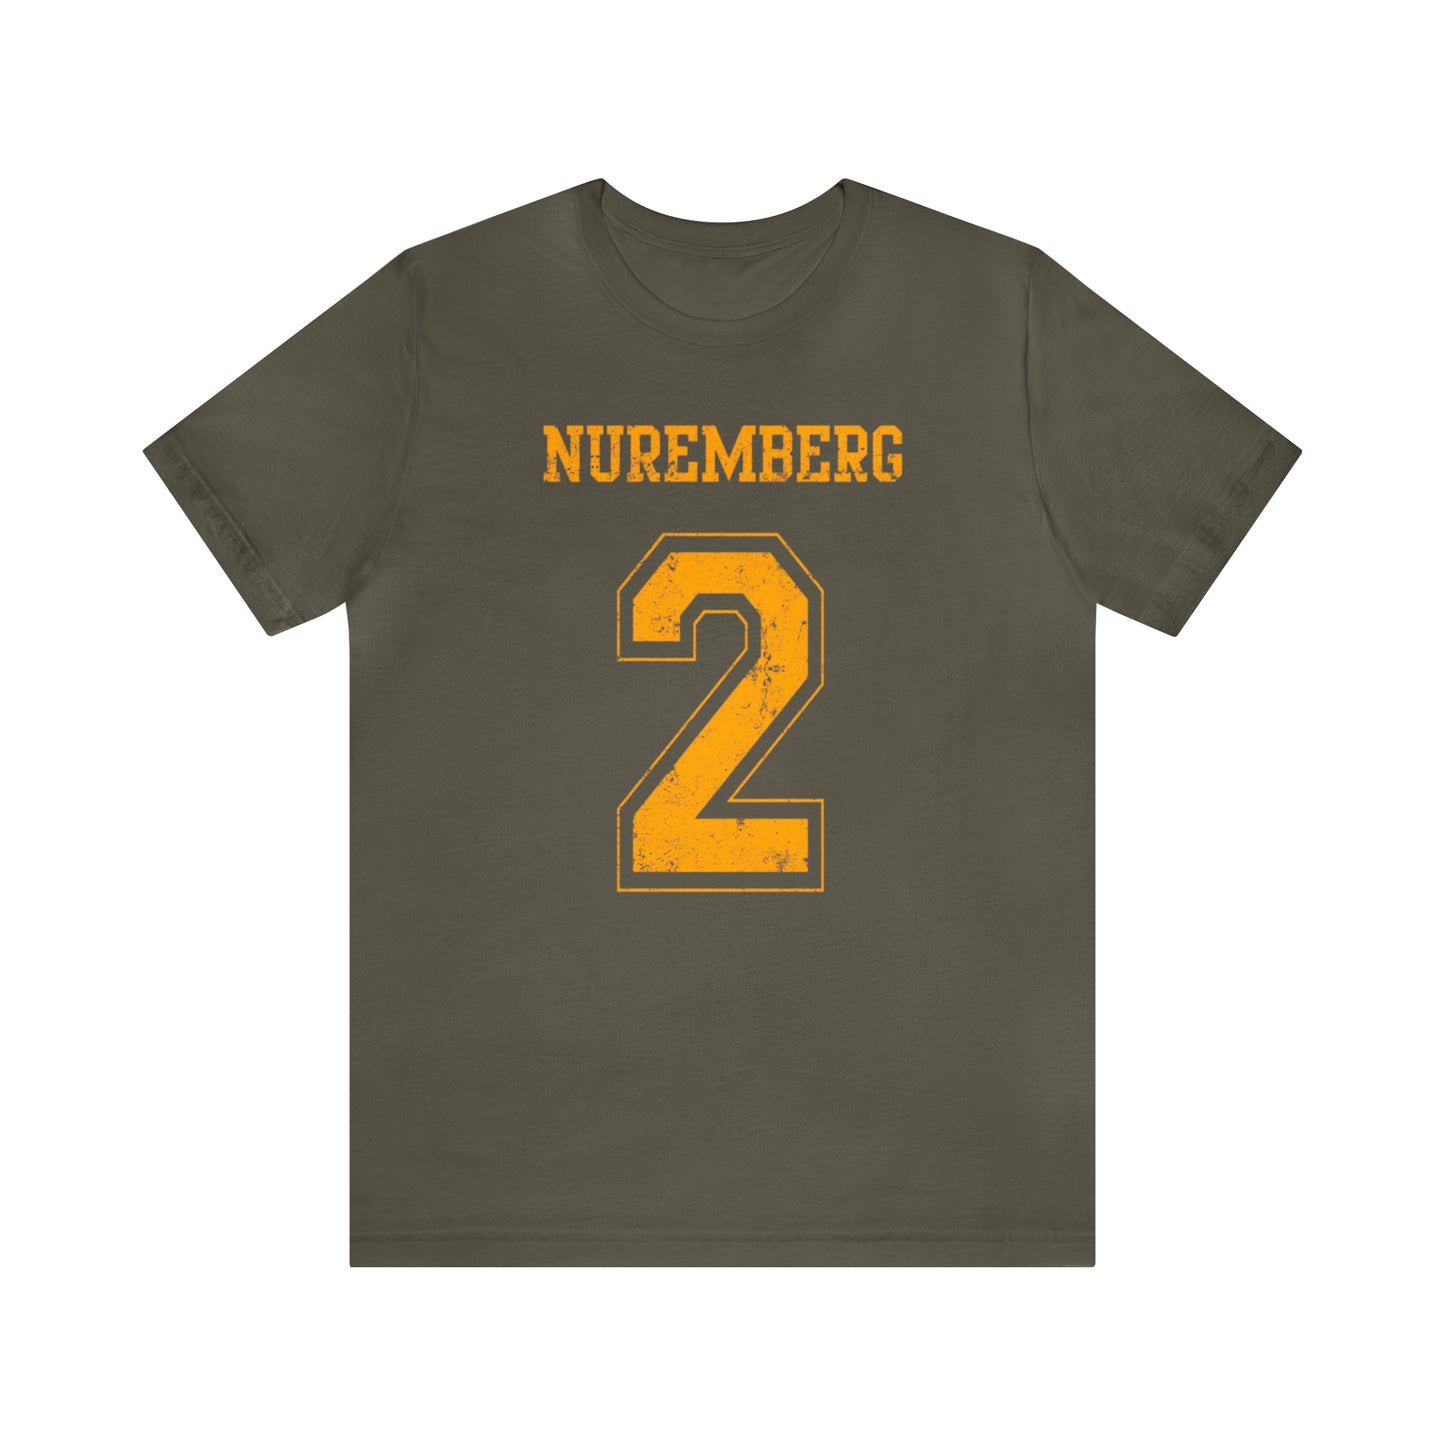 Nuremberg 2 Jersey-Style Unisex Jersey Short Sleeve Tee